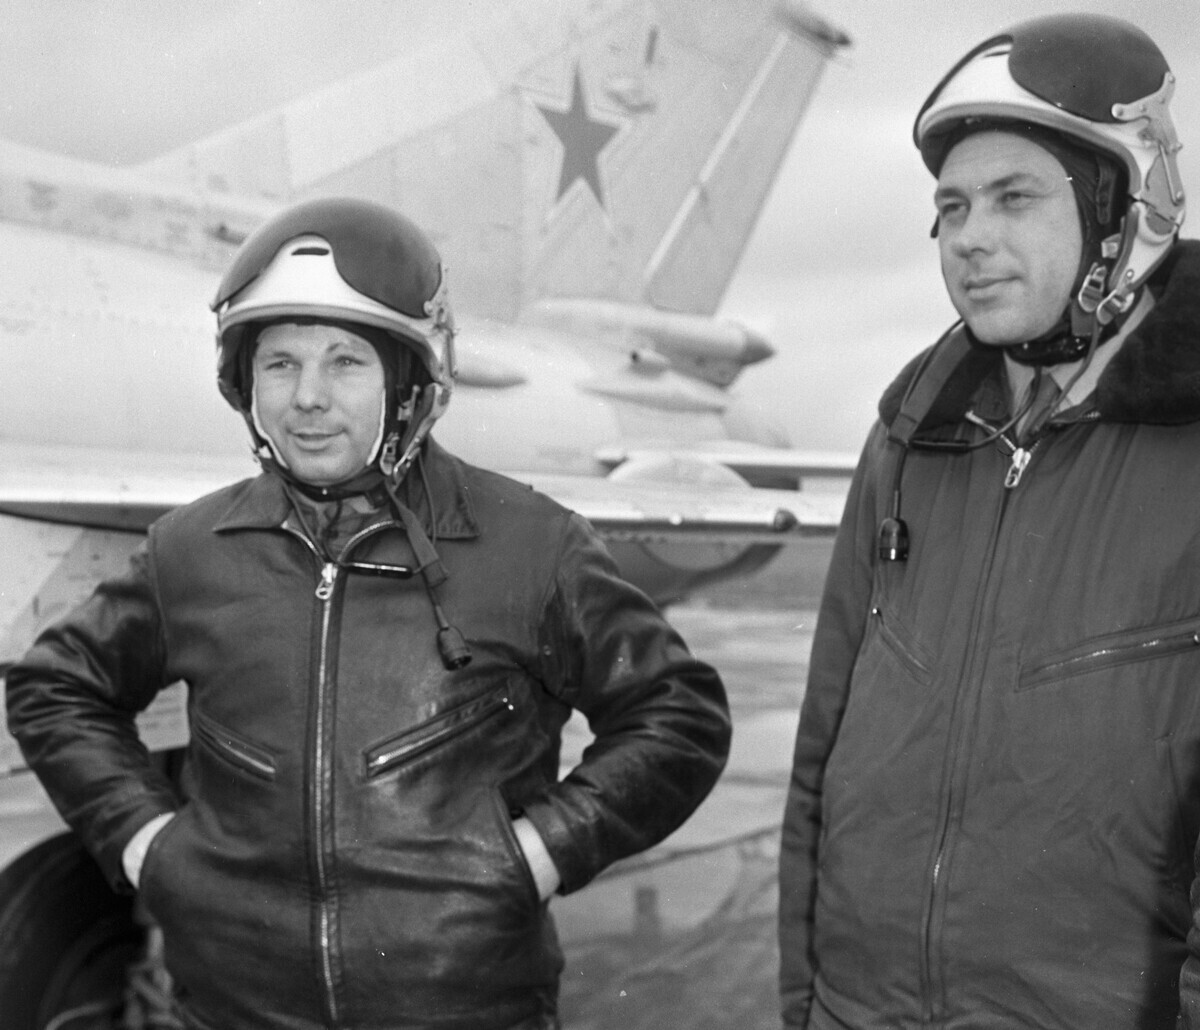 Јуриј Гагарин (лево) и воениот пилот од 1 класа полковник Александар Справцев (десно) на воен аеродром пред вежбовен лет.

